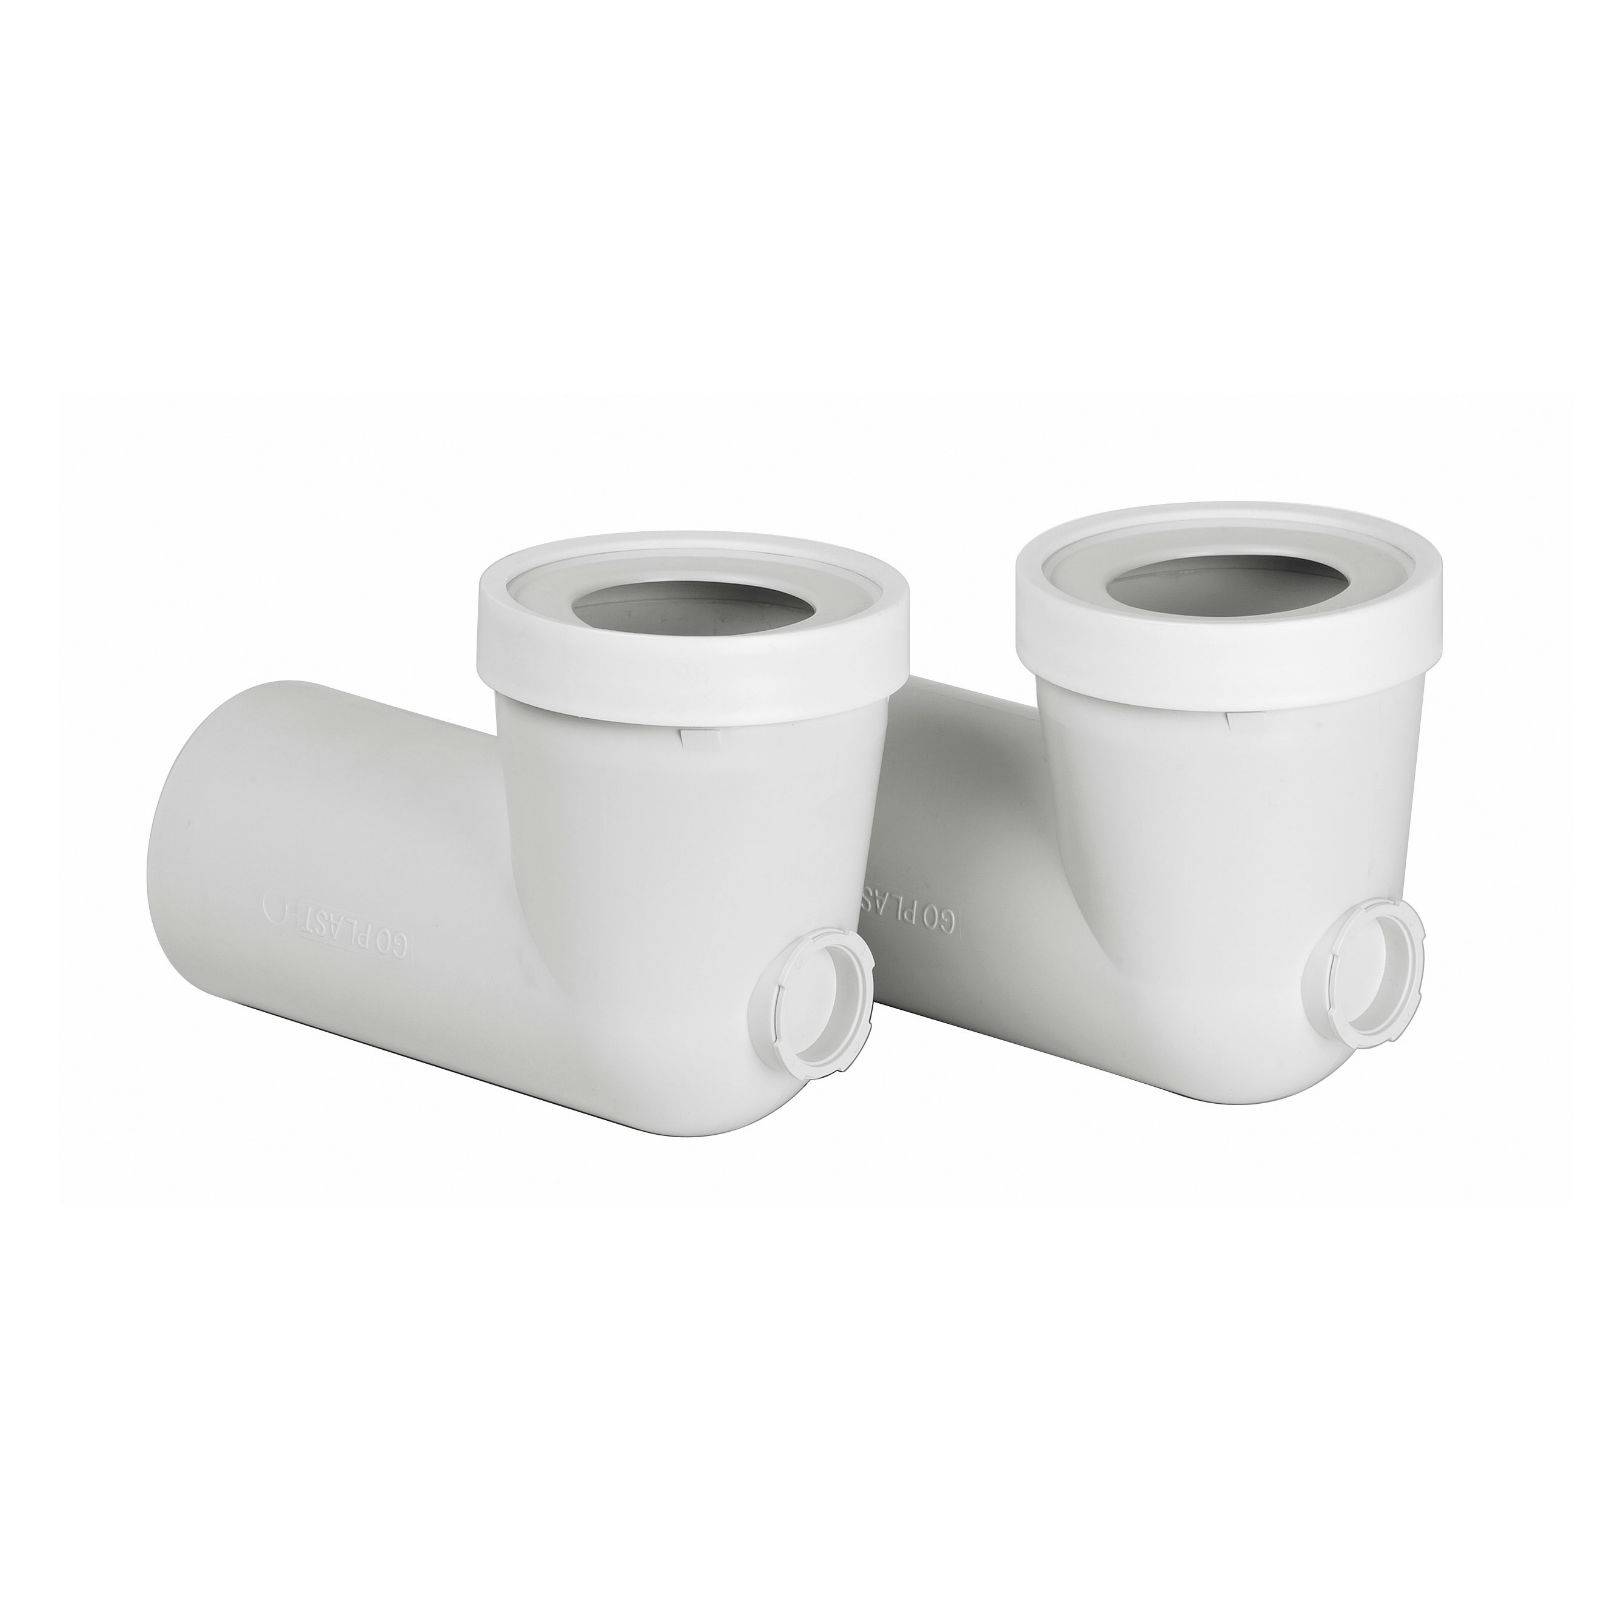 Tubo per scarico WC a gomito 90° con foro per ispezione Ø100mm 40cm bianco